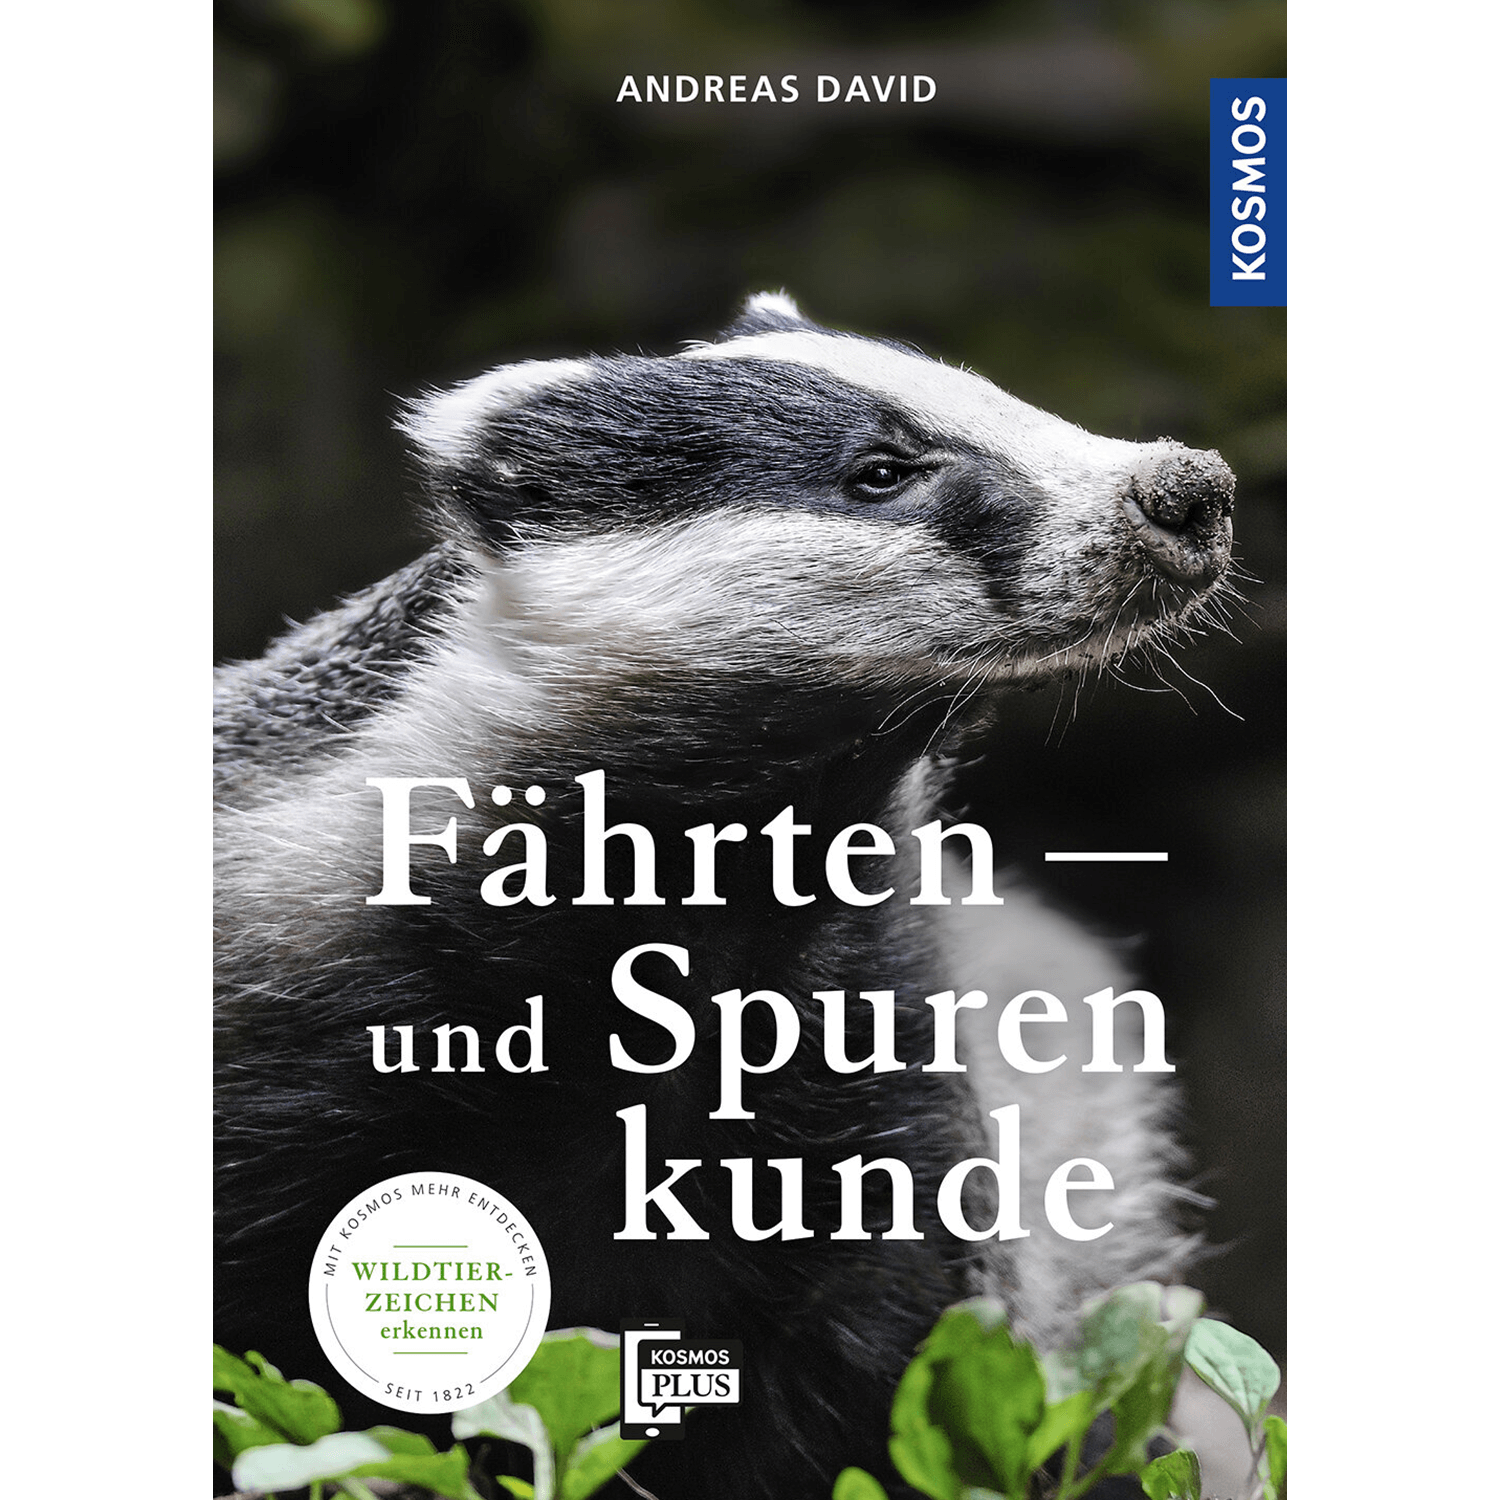 Fährten- und Spurenkunde - Buch - Andreas David